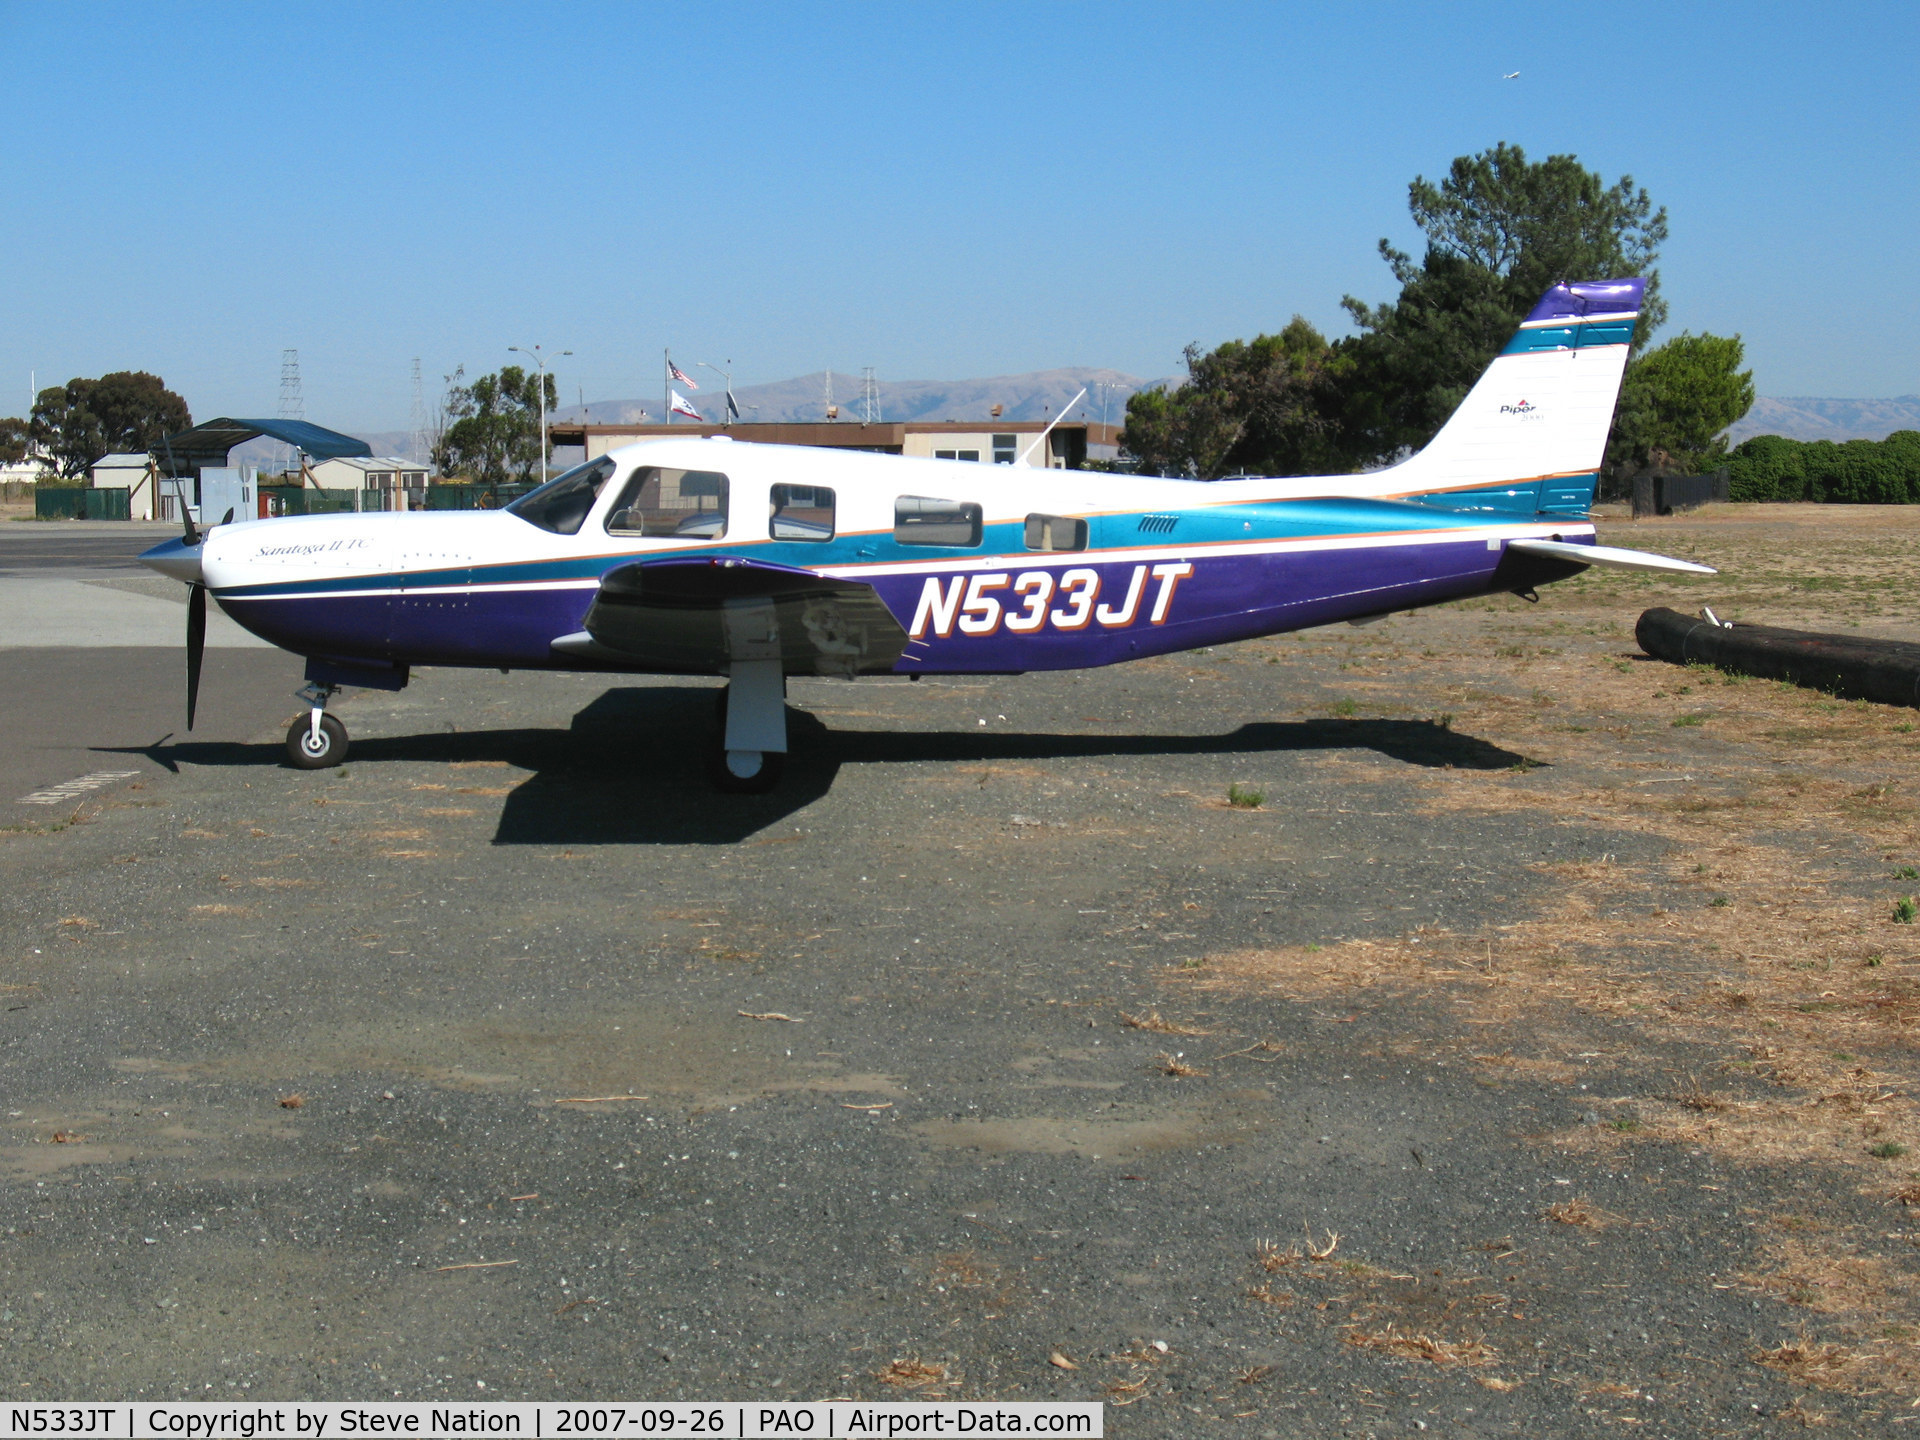 N533JT, 2001 Piper PA-32R-301T Turbo Saratoga C/N 3257198, @ Palo Alto Airport, CA